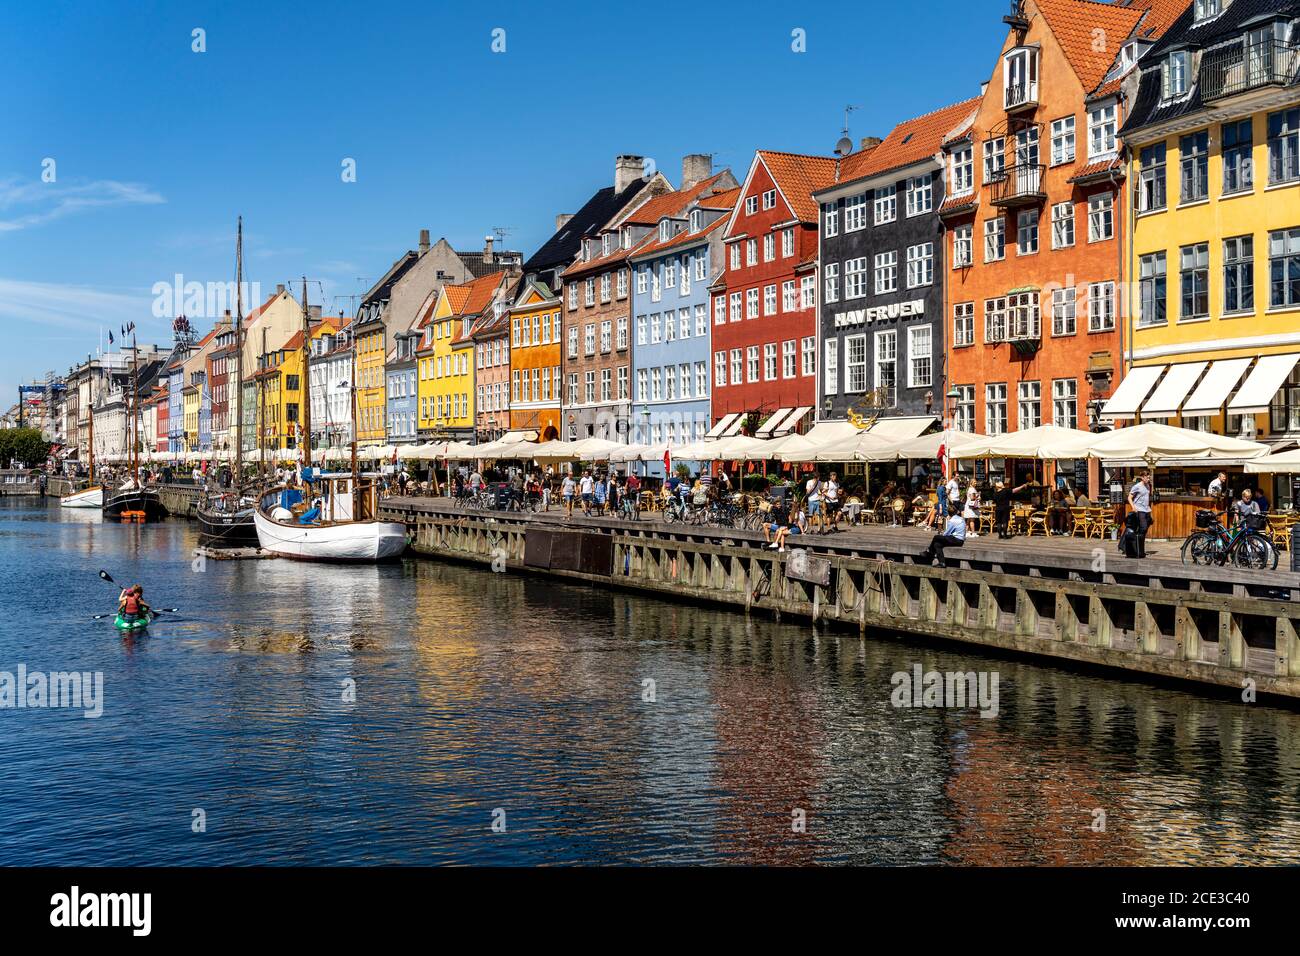 Bunte Häuser, Restaurants und historische Schiffe am Kanal und Hafen Nyhavn, Kopenhagen, Dänemark, Europa | Colourful facades, Restaurants and old shi Stock Photo